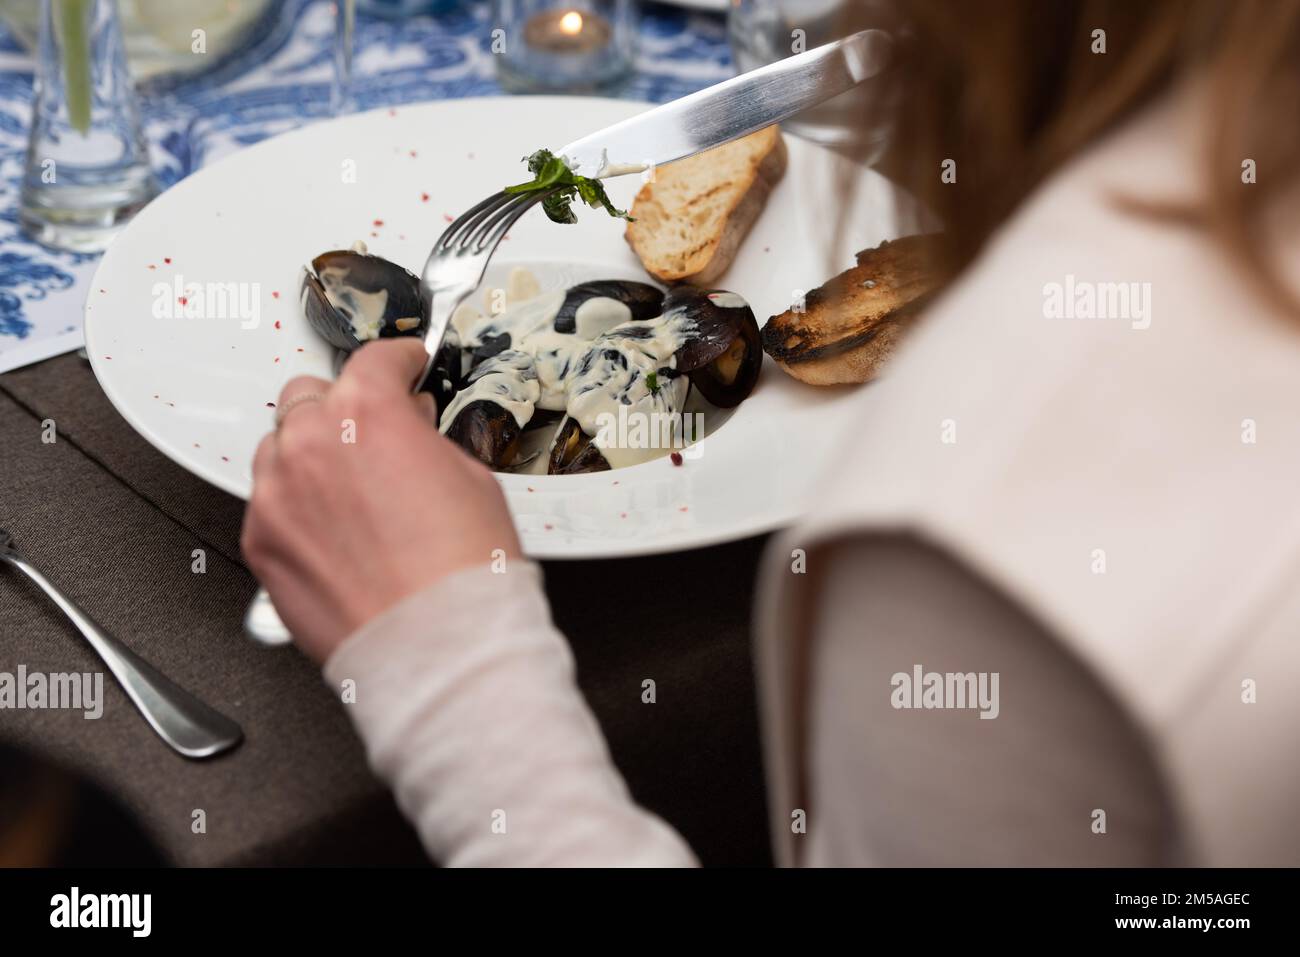 femme qui va manger des moules dans une sauce au vin blanc et des toasts de pain blanc dans un restaurant Banque D'Images